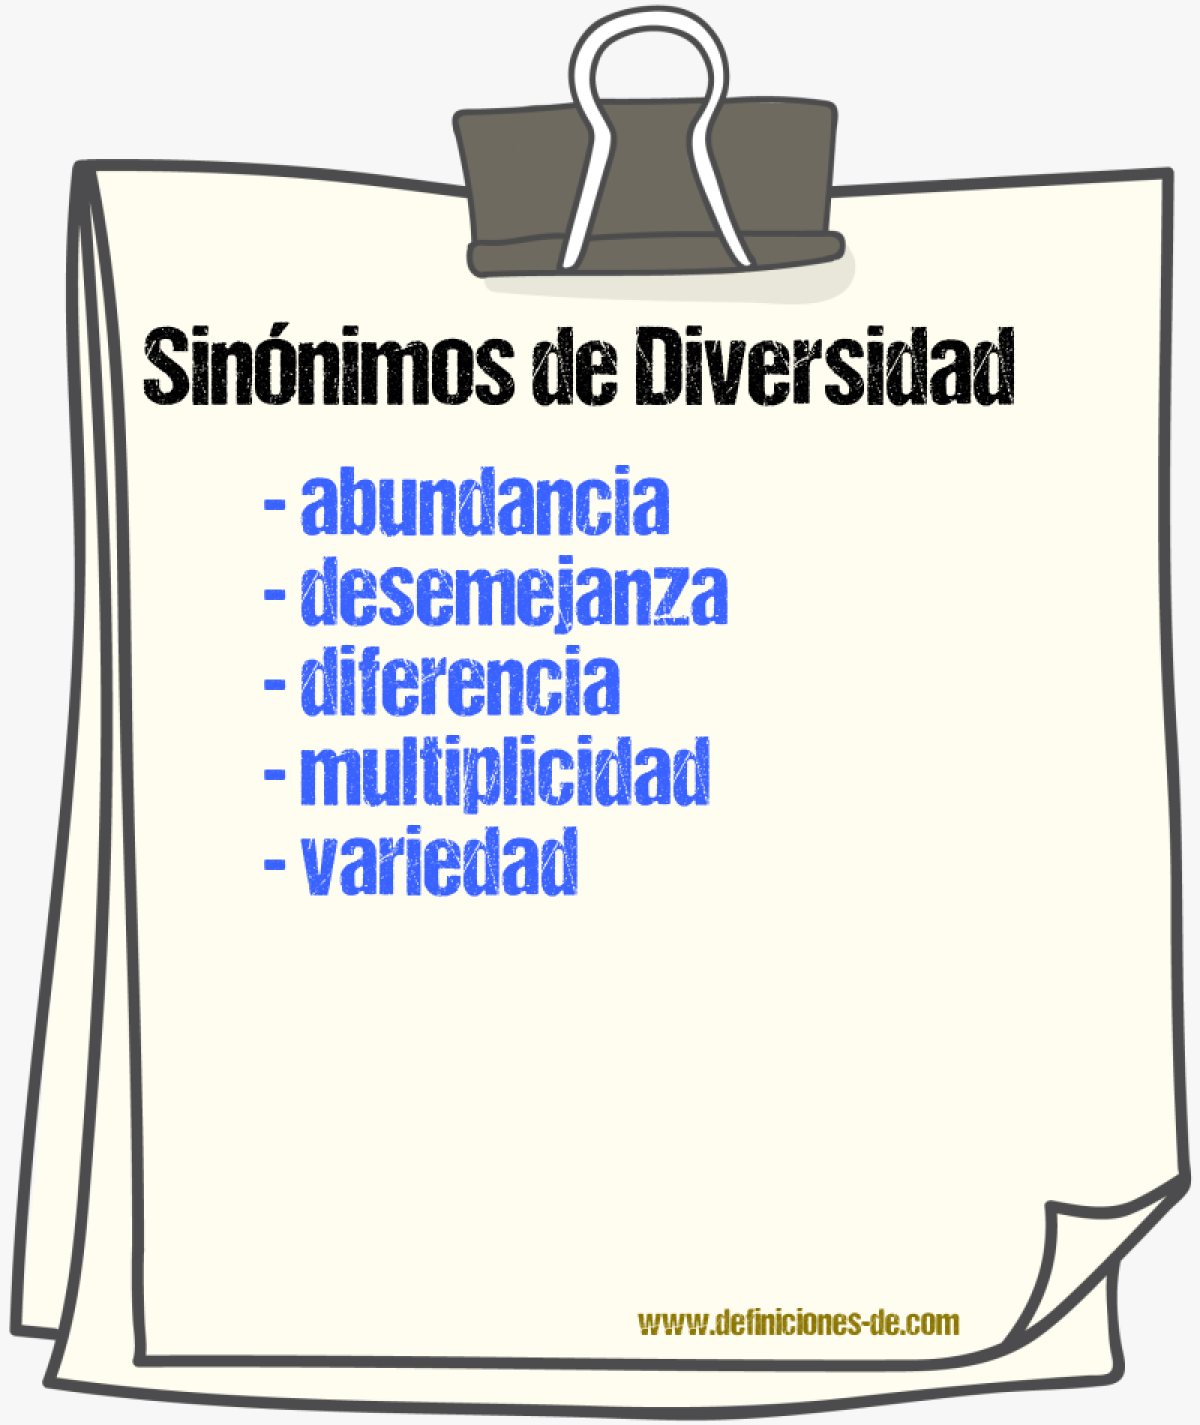 Sinónimos de diversidad